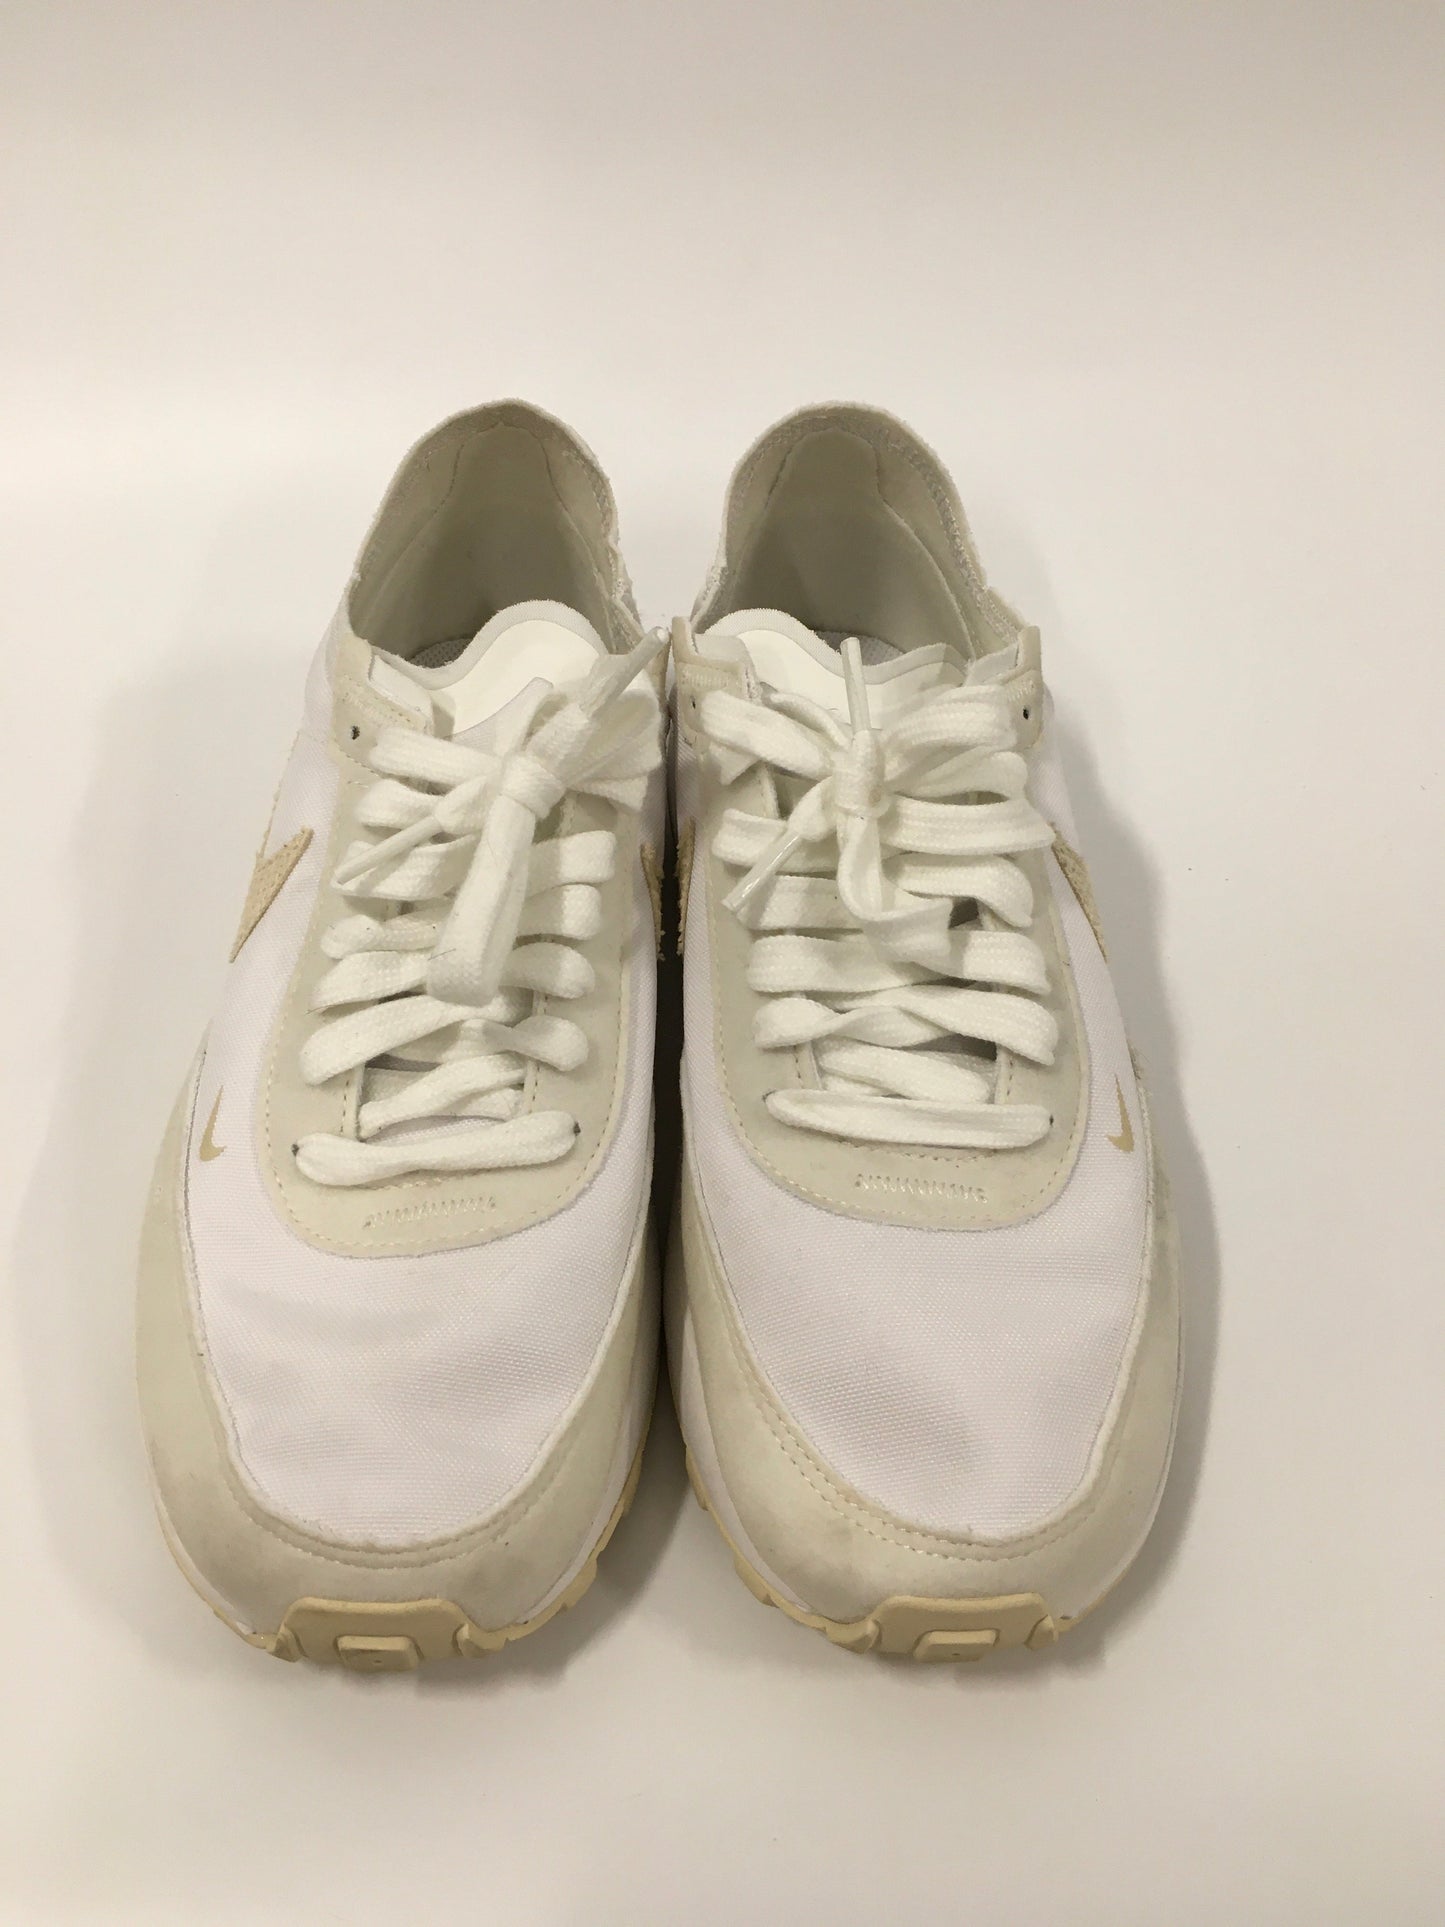 White Shoes Athletic Nike, Size 7.5